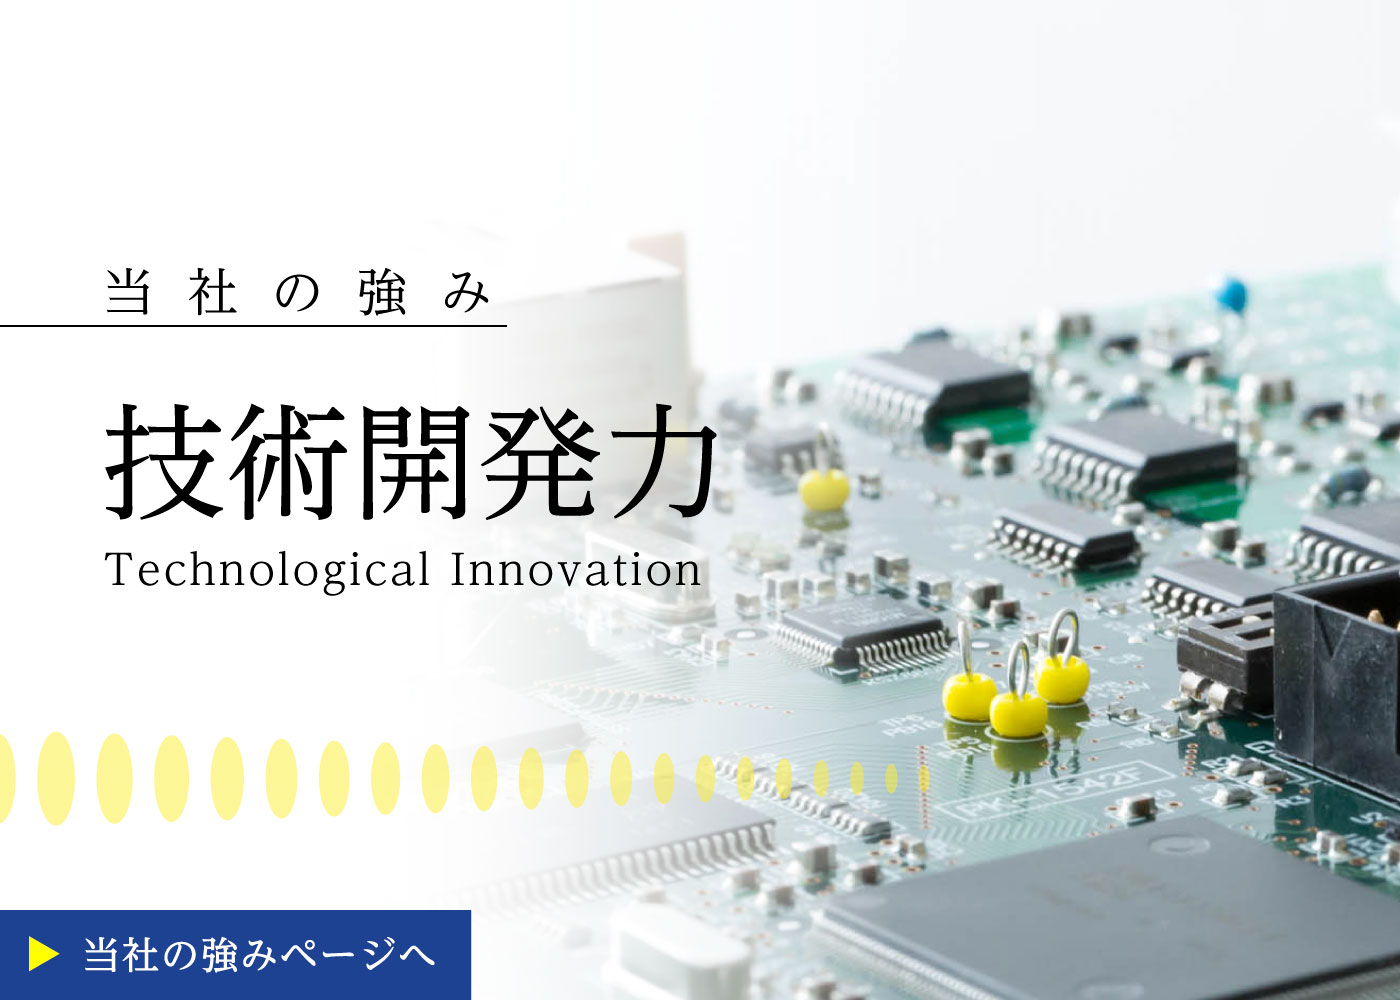 電源装置専門メーカーYAMABISHIの強み「技術開発力」